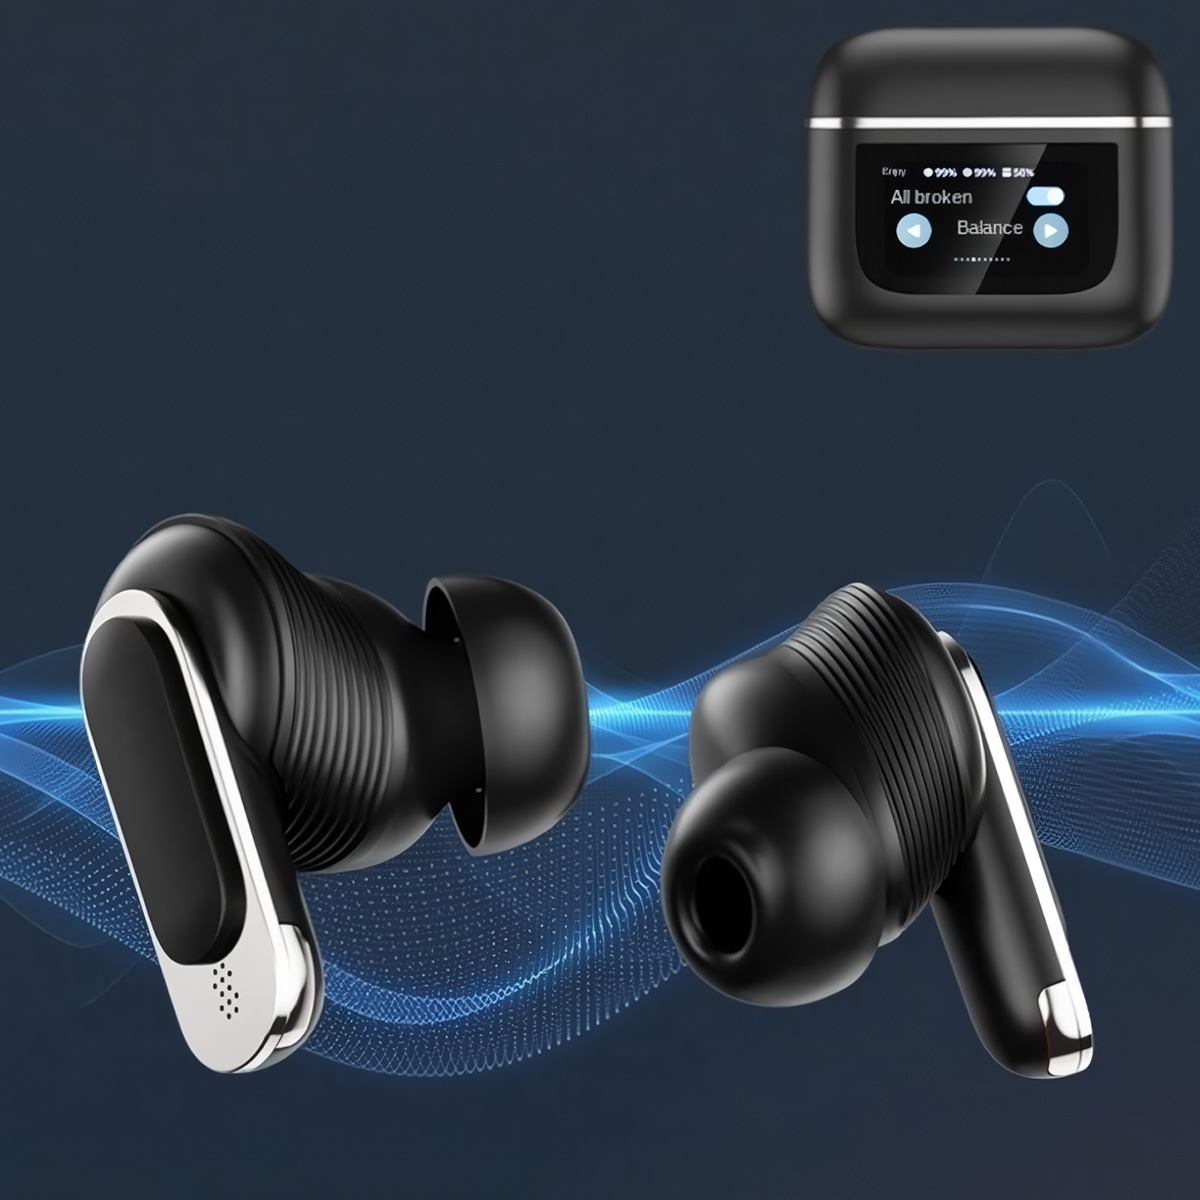 Auriculares Bluetooth Klack Con Cancelación De Ruido Real (Anc) Y Pantalla Táctil Inteligente